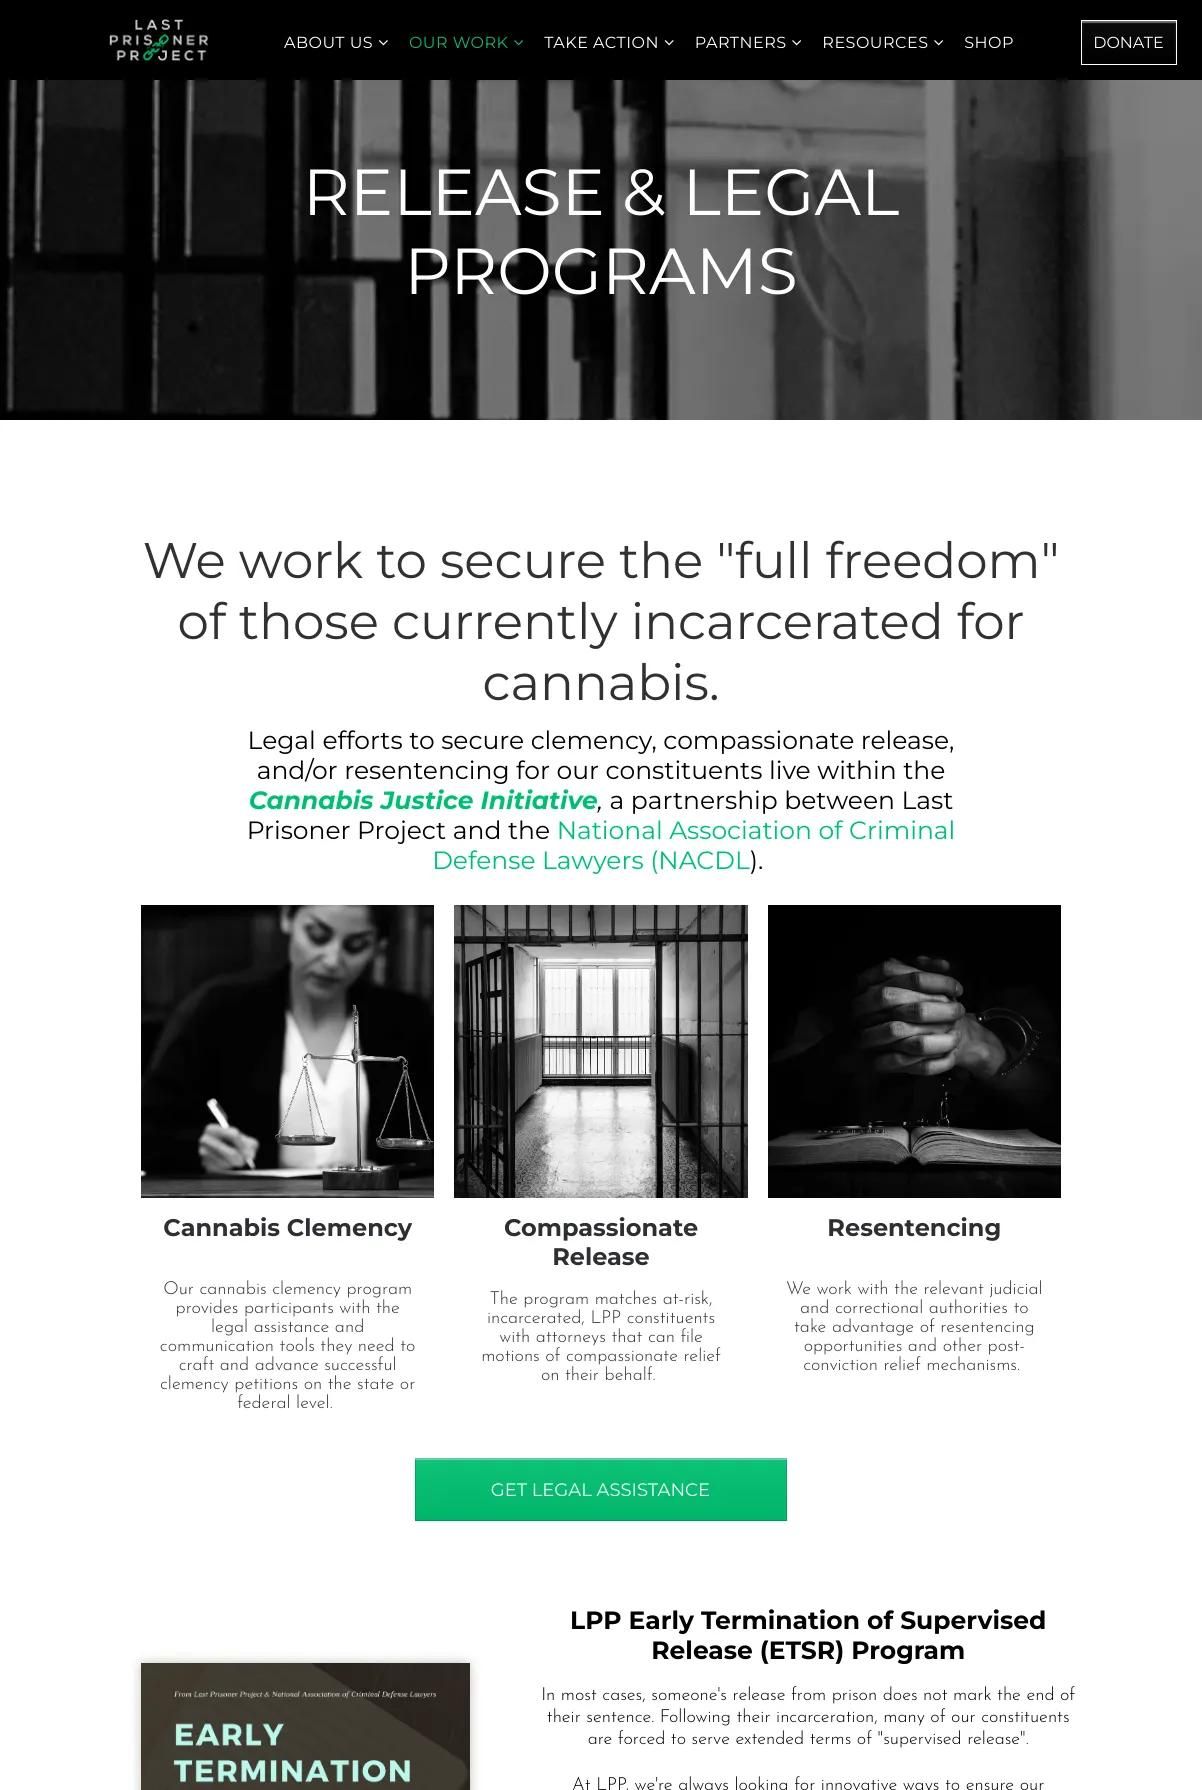 Screenshot 2 of The Last Prisoner Project (Example Duda Website)